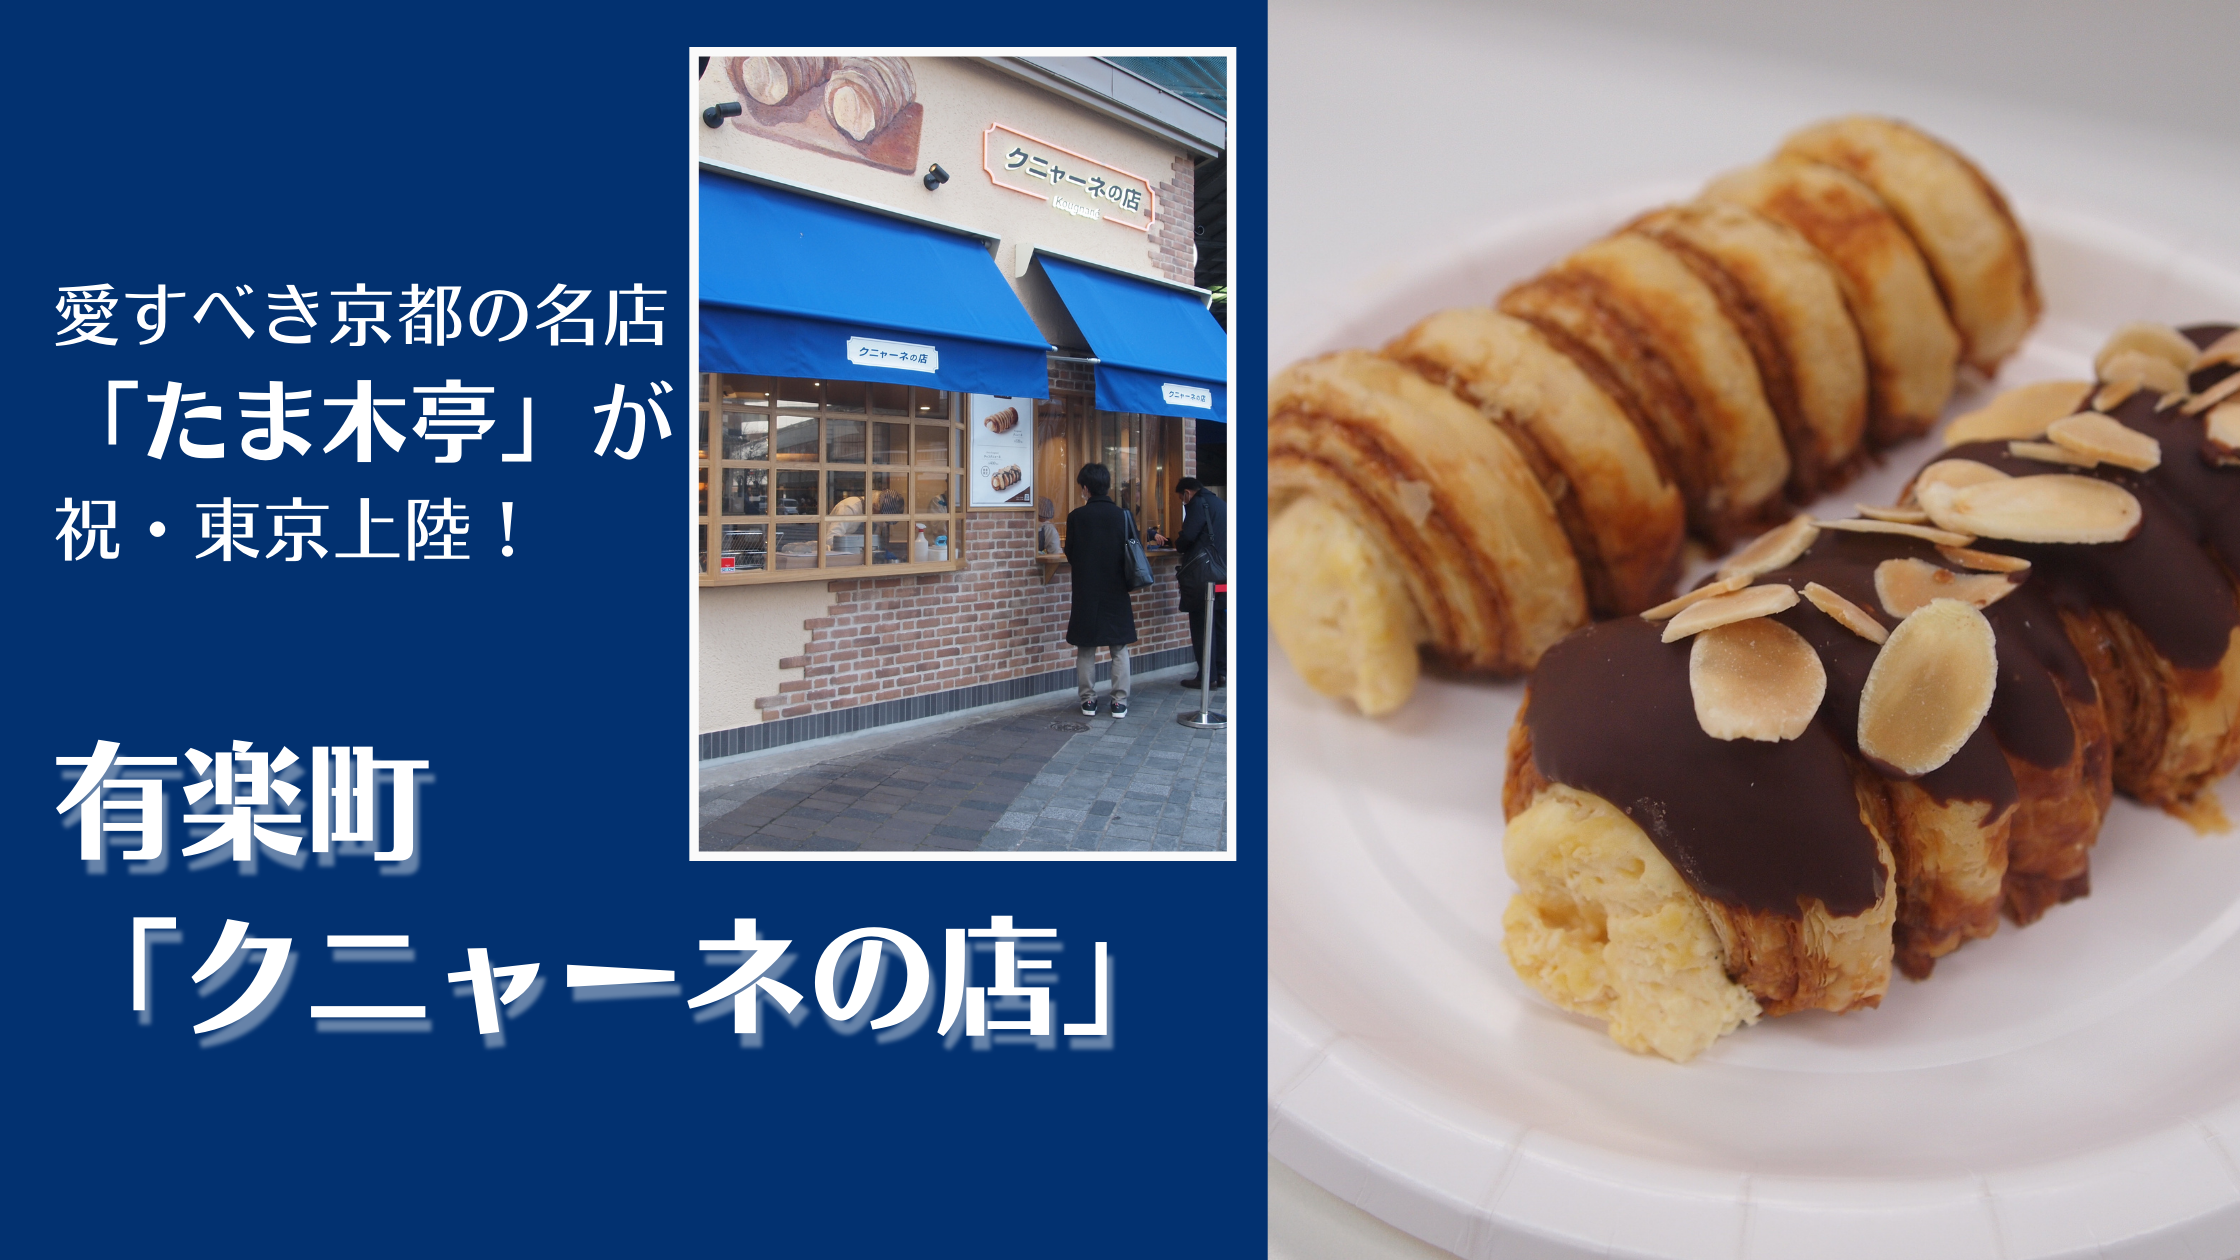 愛すべき京都の名店「たま木亭」が祝・東京上陸！有楽町「クニャーネの店」